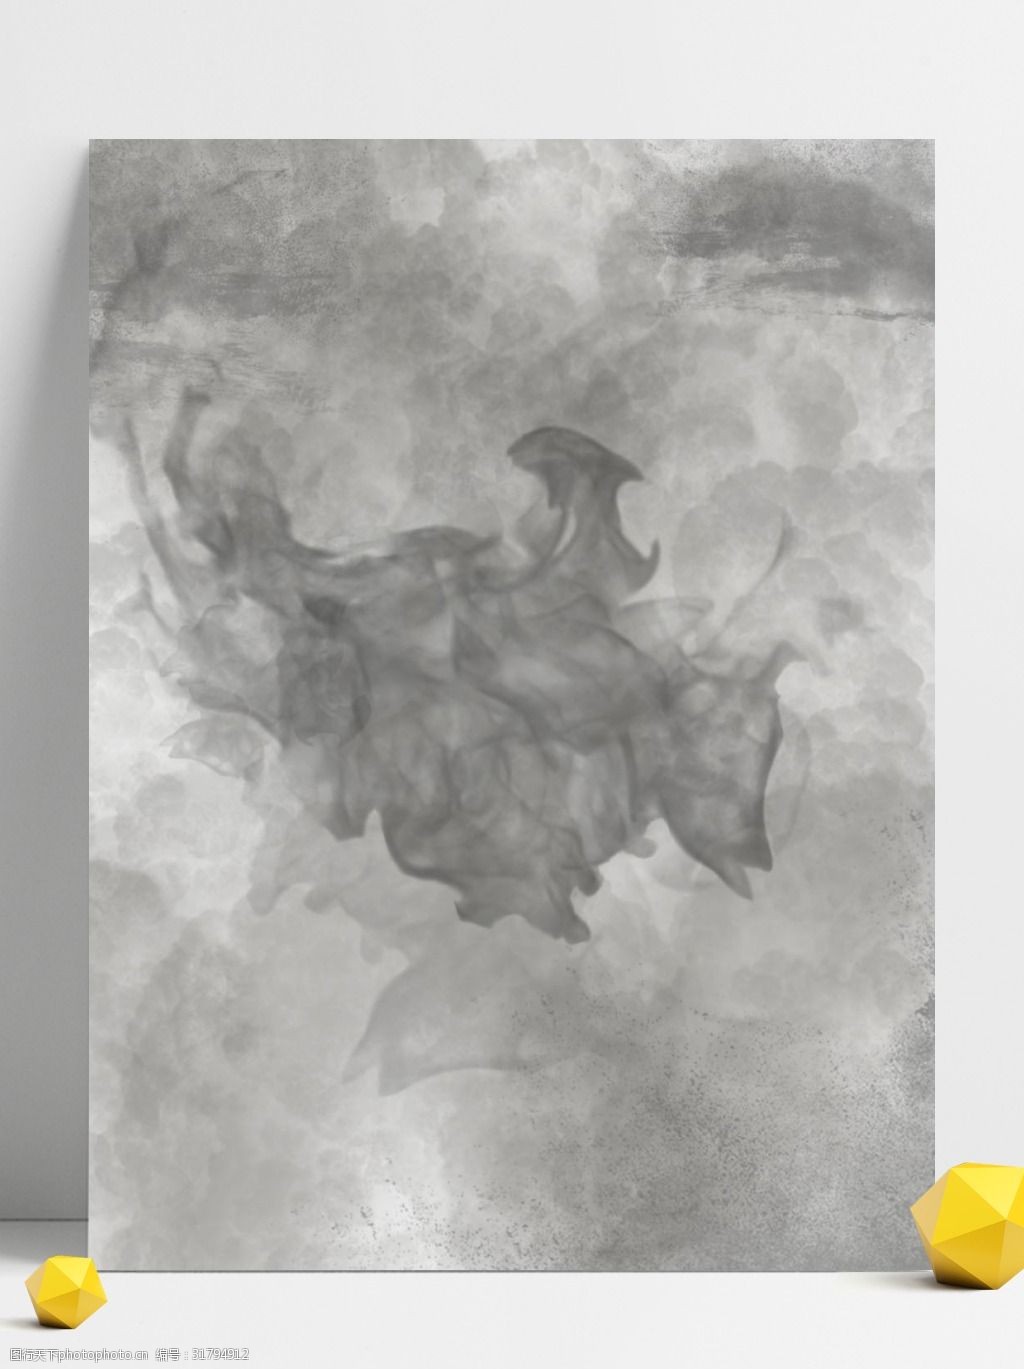 关键词:原创烟雾抽象质感水彩背景 烟雾 质感 泼墨 原创 灰色 水彩